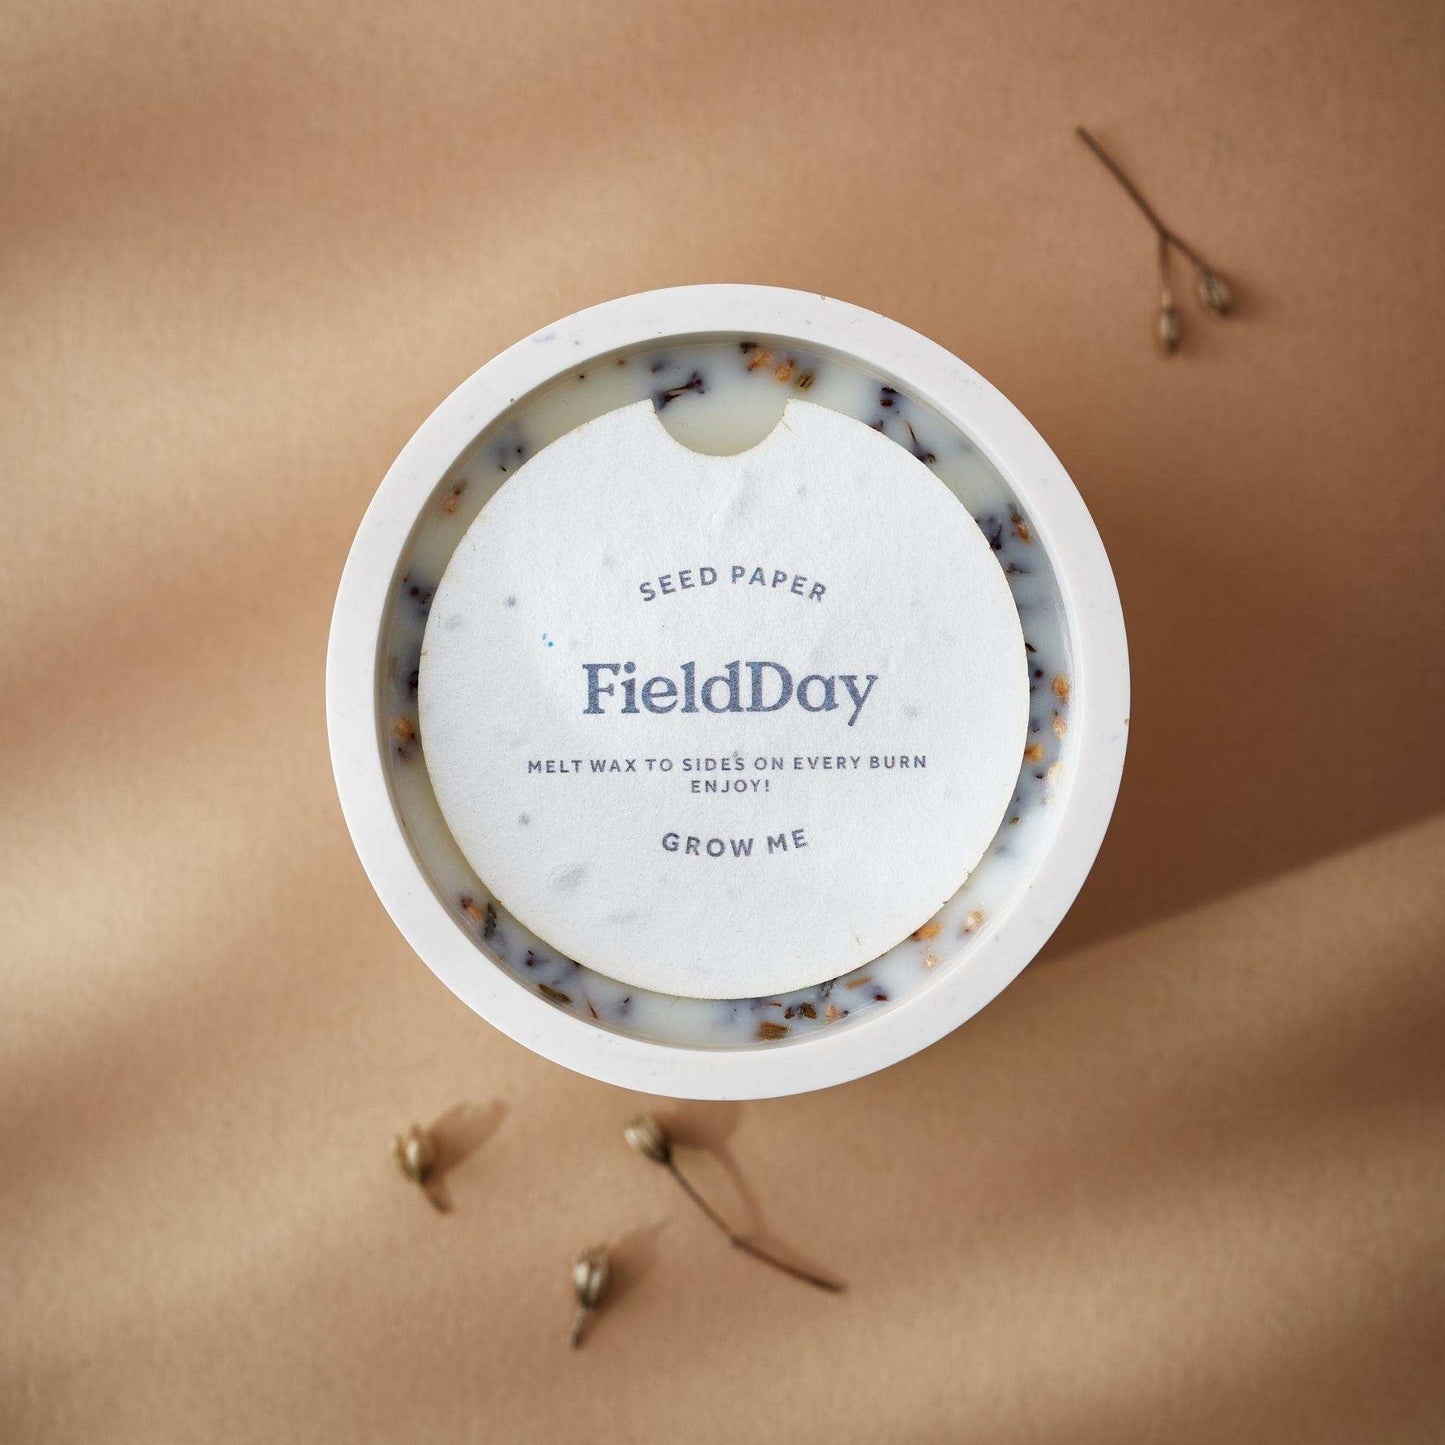 FieldDay Wax Melts Wildflower Soy Wax Candle - Wild Blossom & Field Flowers - FieldDay Seeds of Change